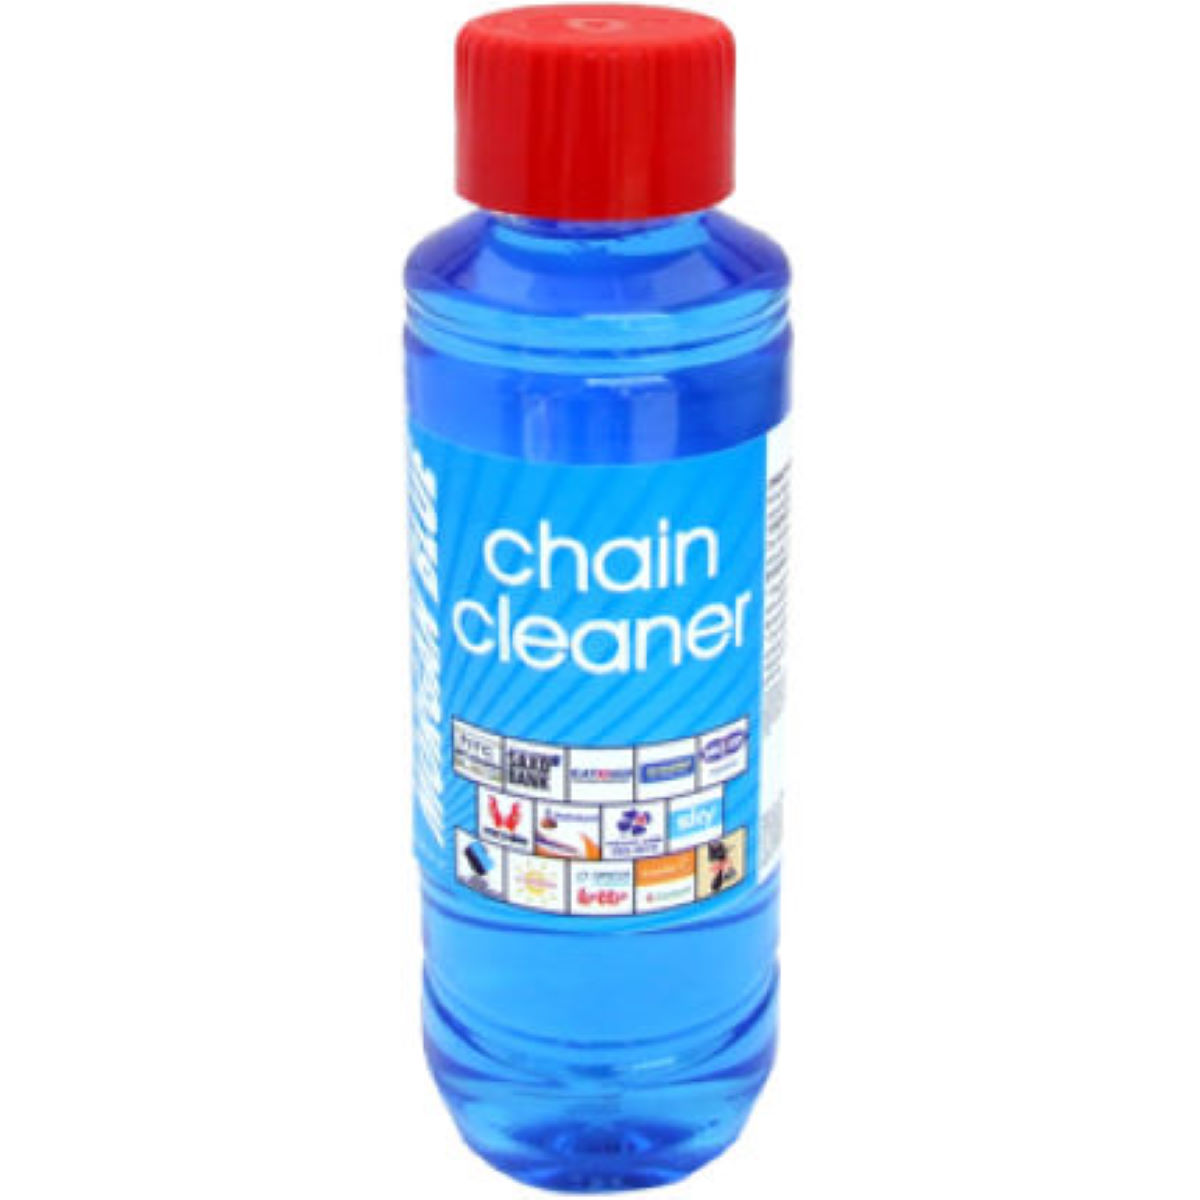 Líquido limpiador de cadenas Morgan Blue Chain Cleaner (250 ml) - Productos de limpieza